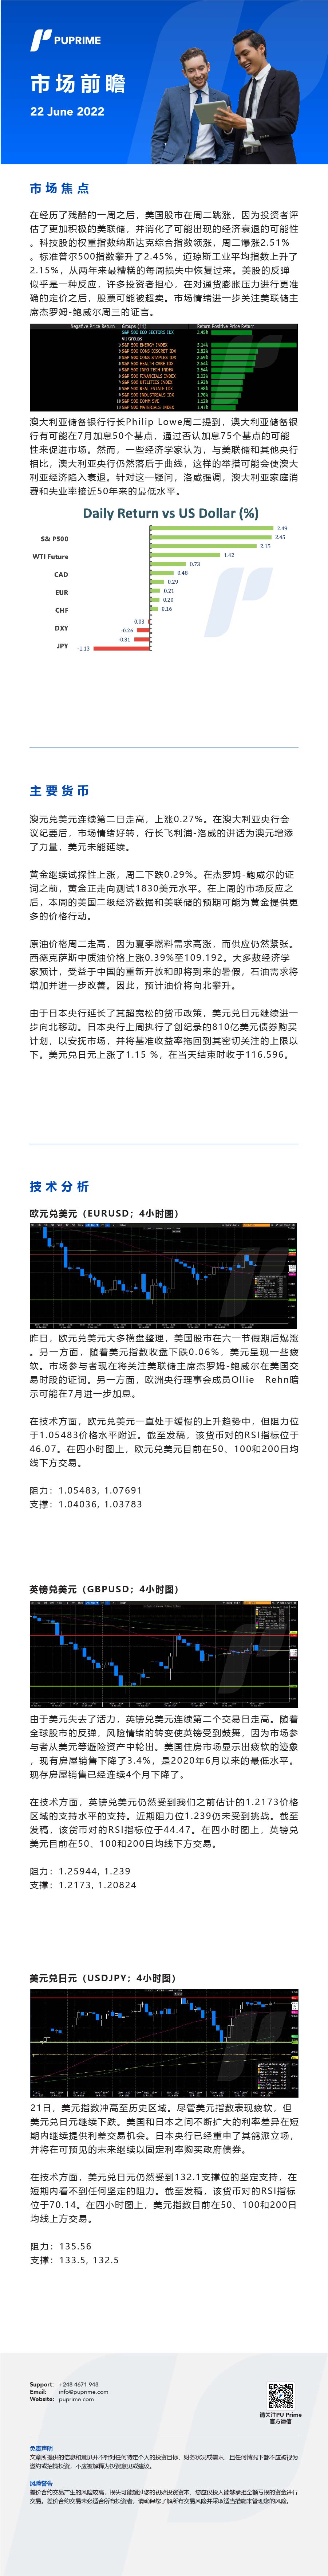 22062022 Daily Market Analysis__CHN.jpg